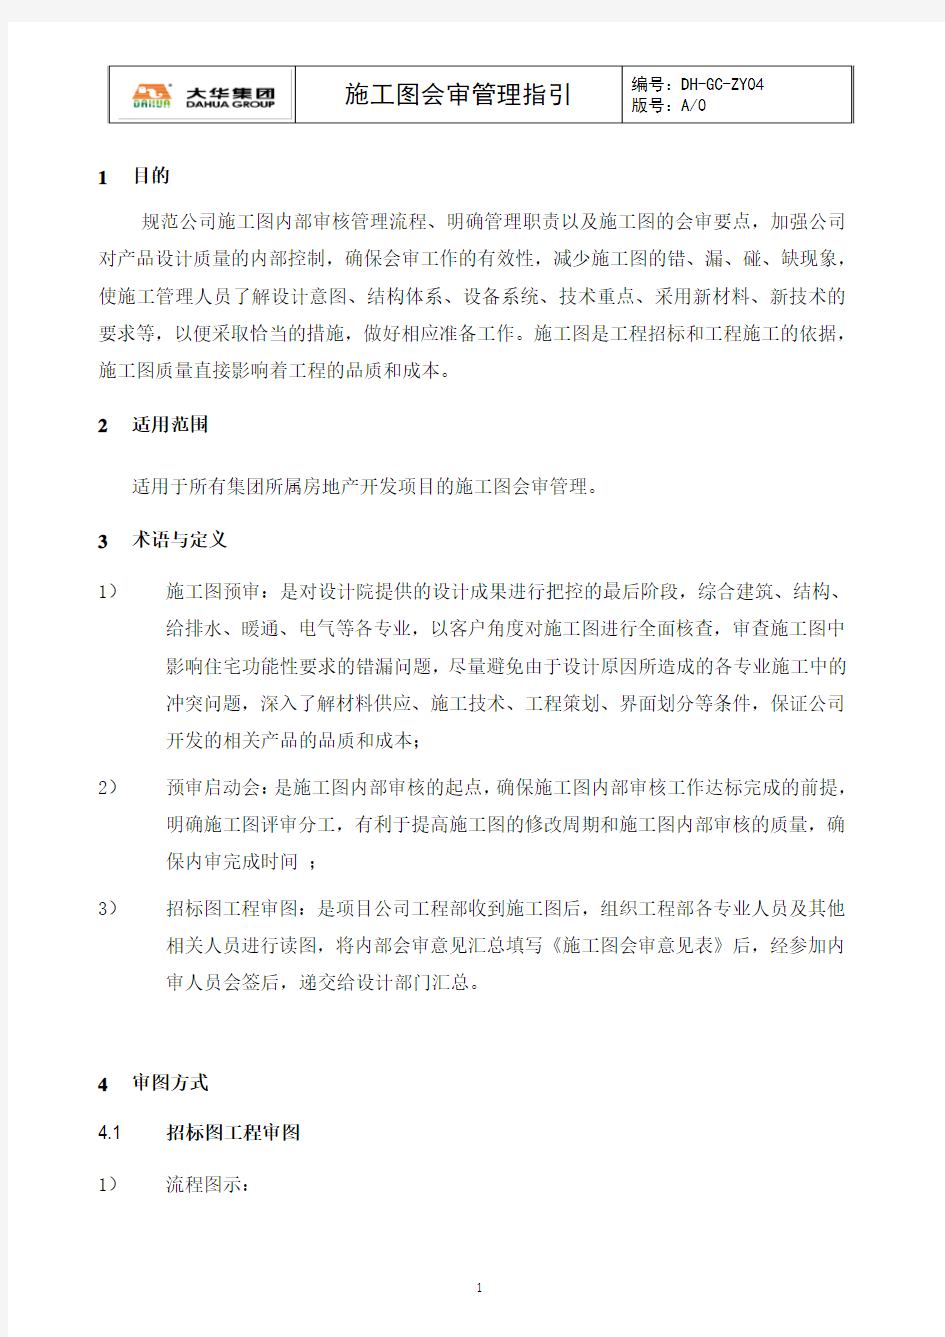 DH-GC-ZY04大华集团施工图会审管理指引2017.9.19稿